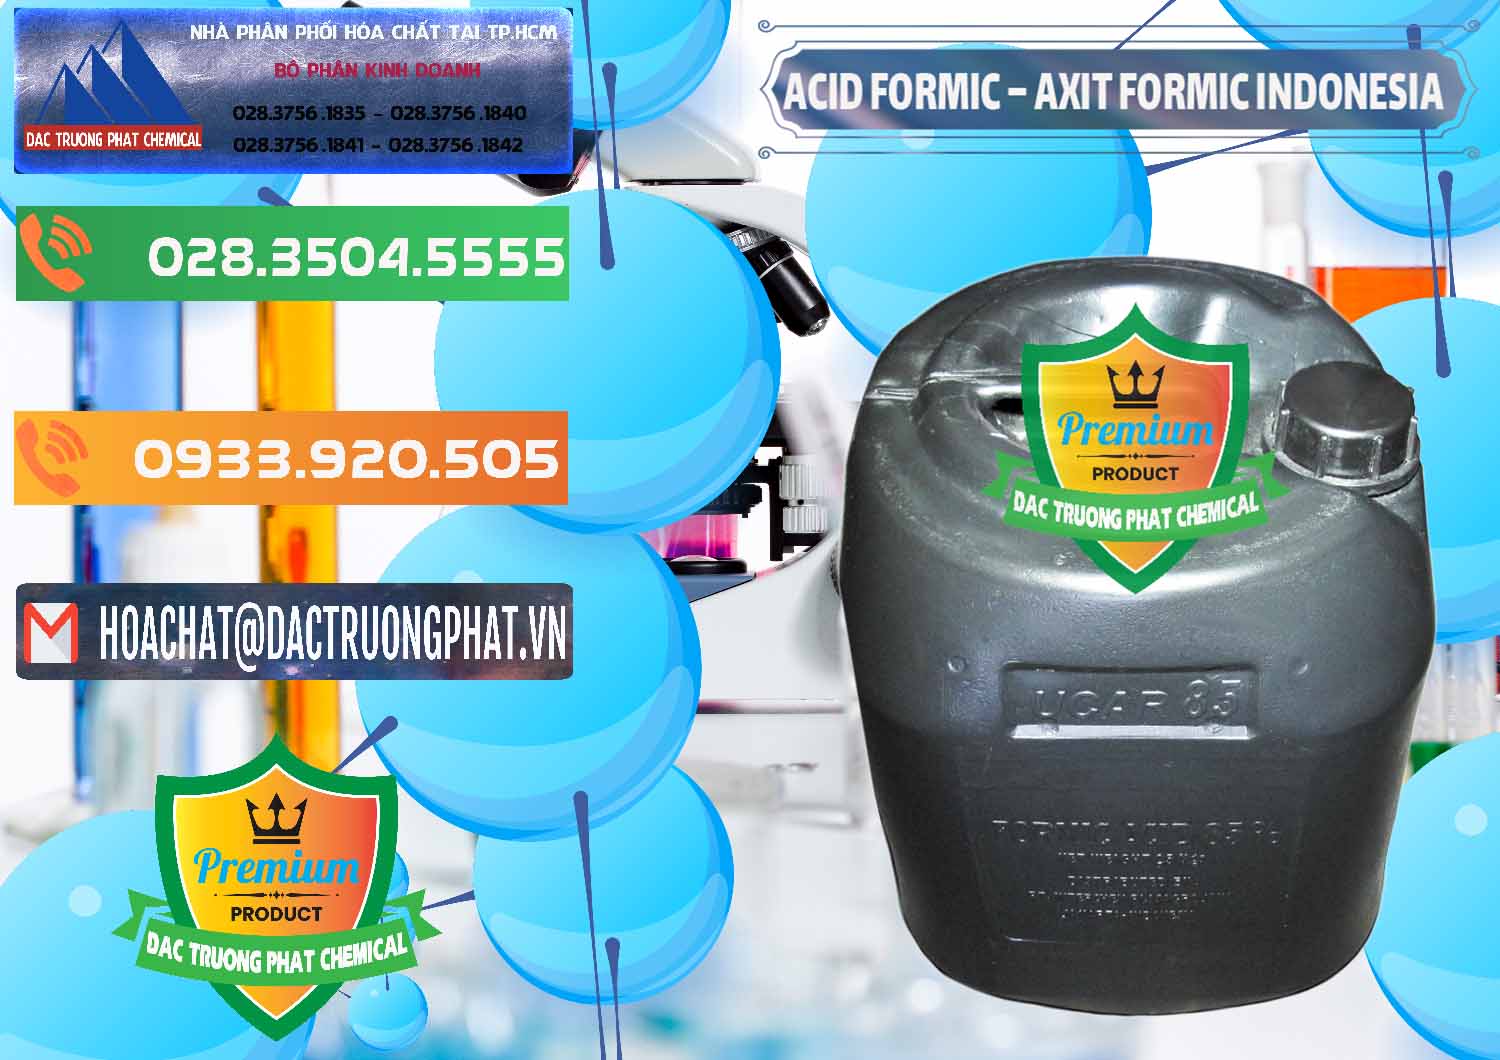 Chuyên bán & phân phối Acid Formic - Axit Formic Indonesia - 0026 - Cty phân phối - nhập khẩu hóa chất tại TP.HCM - hoachatxulynuoc.com.vn